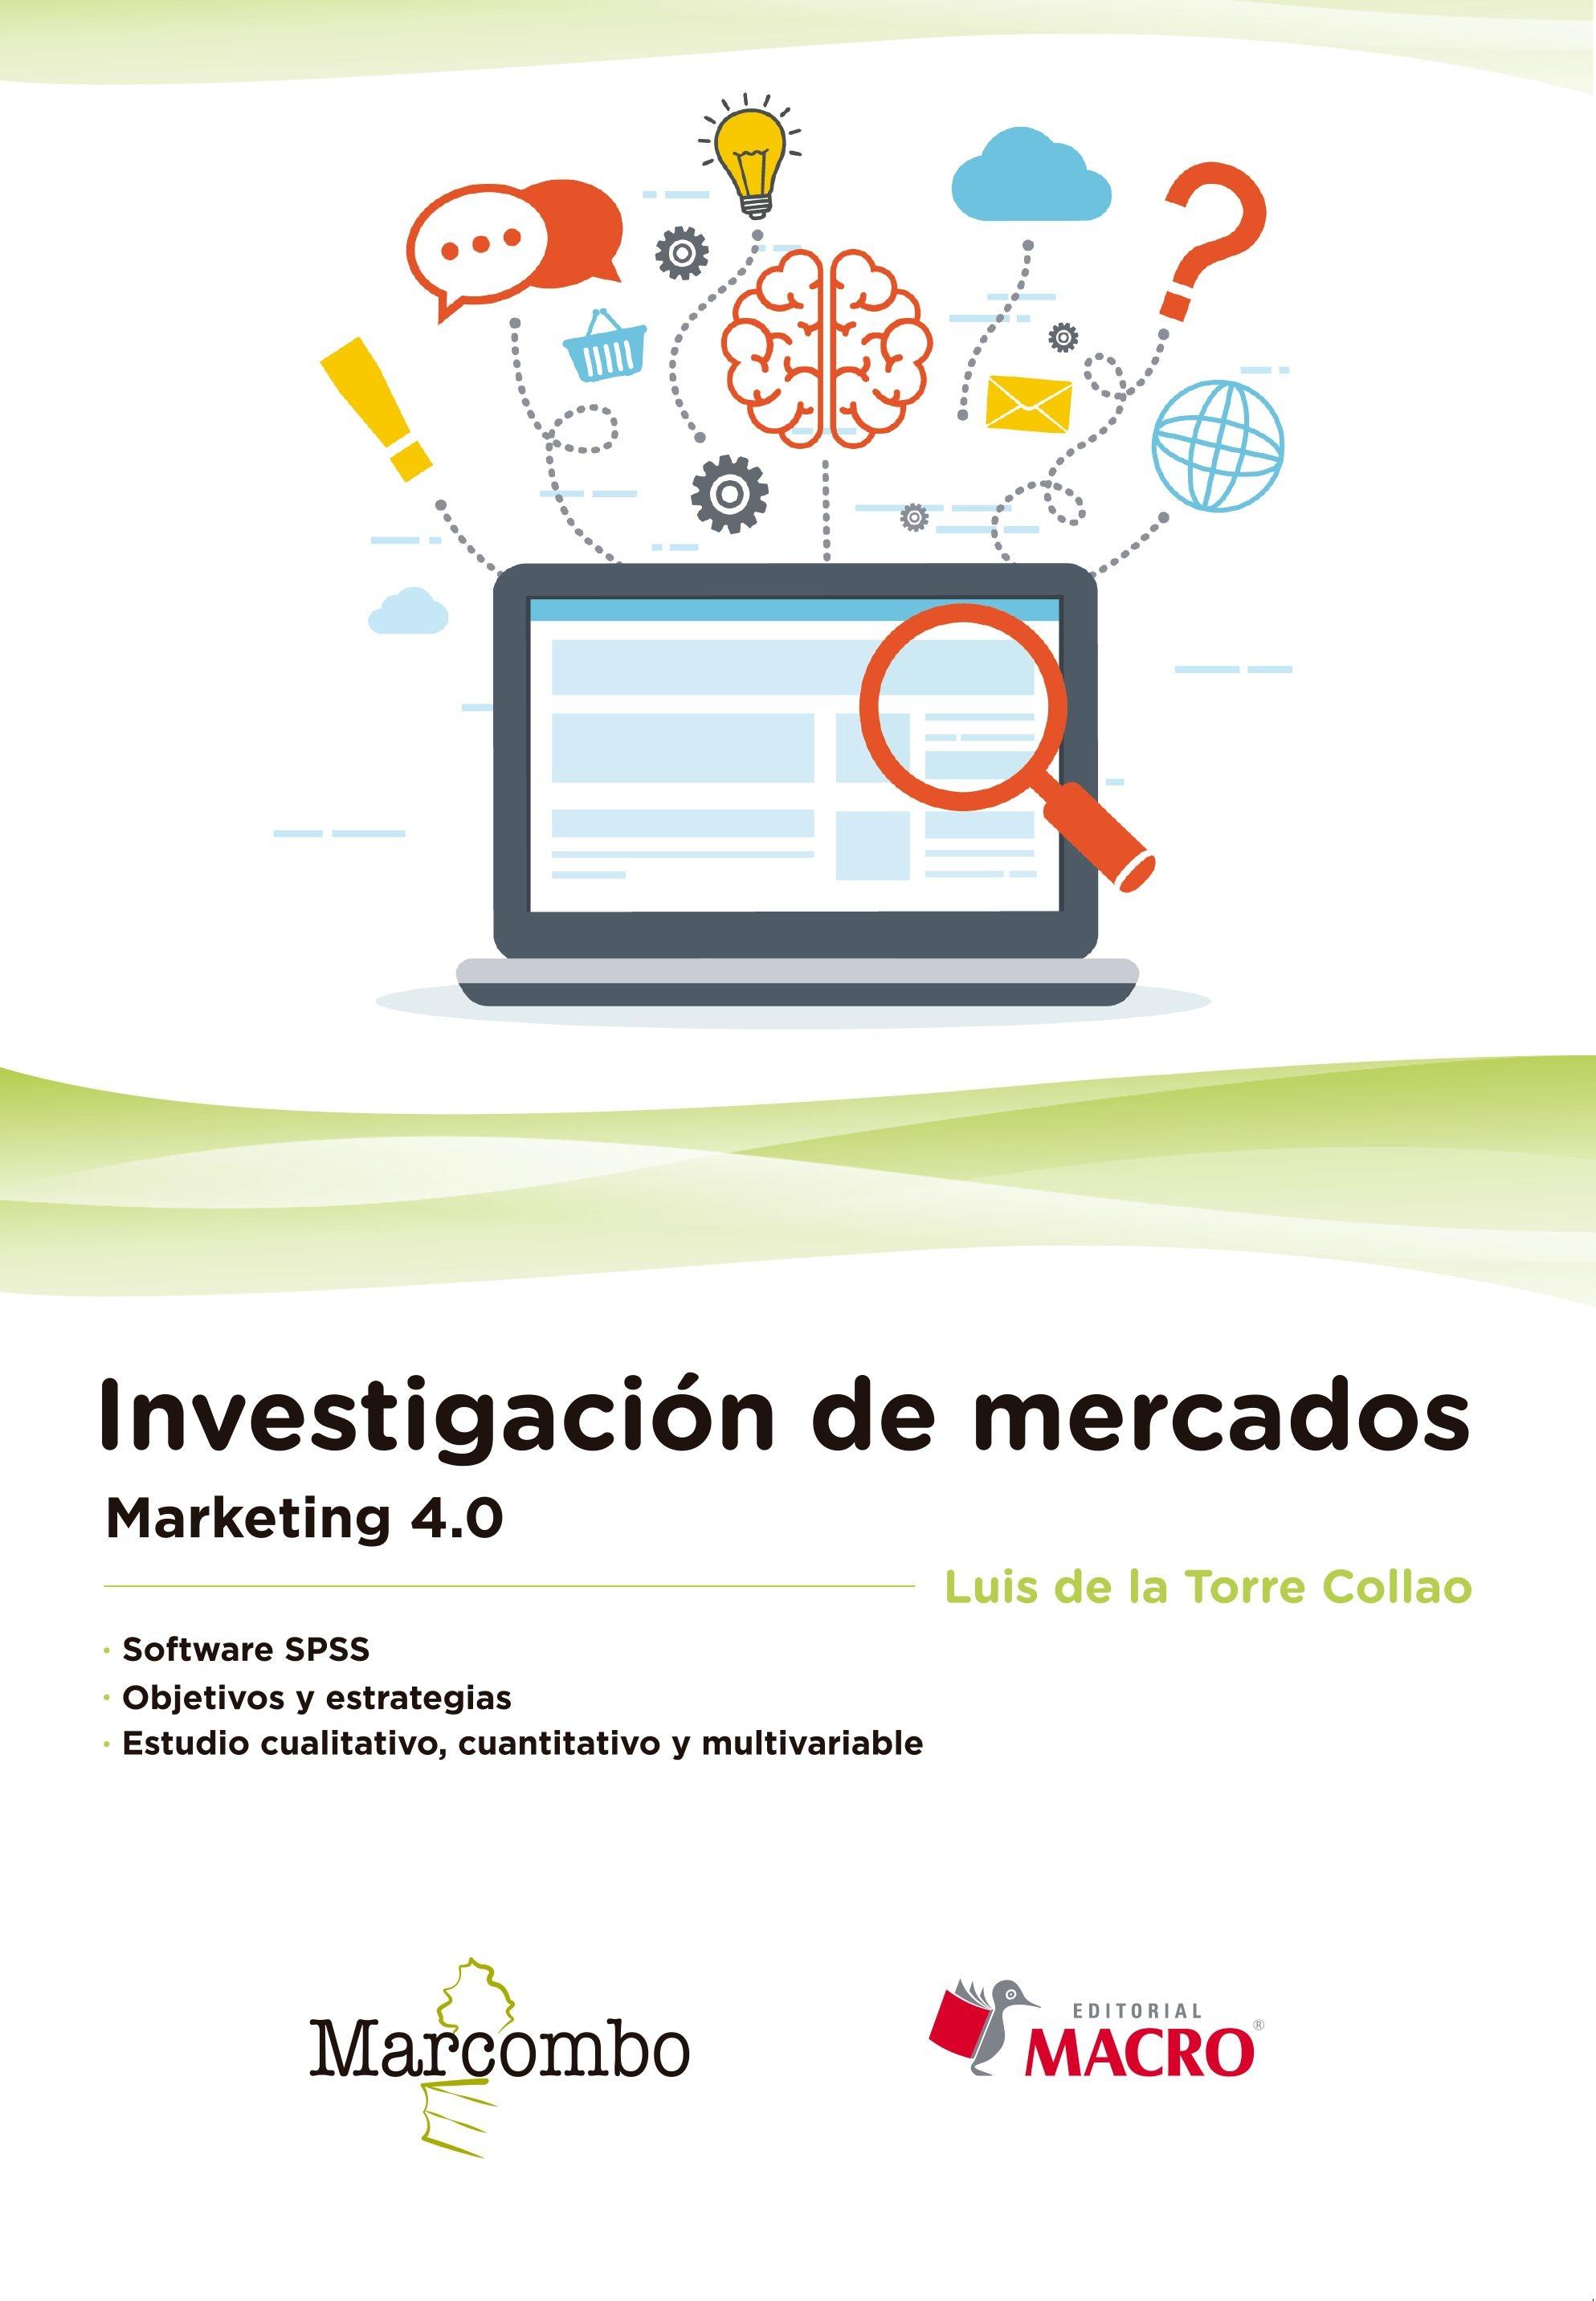 Investigación de mercados "Marketing 4.0"